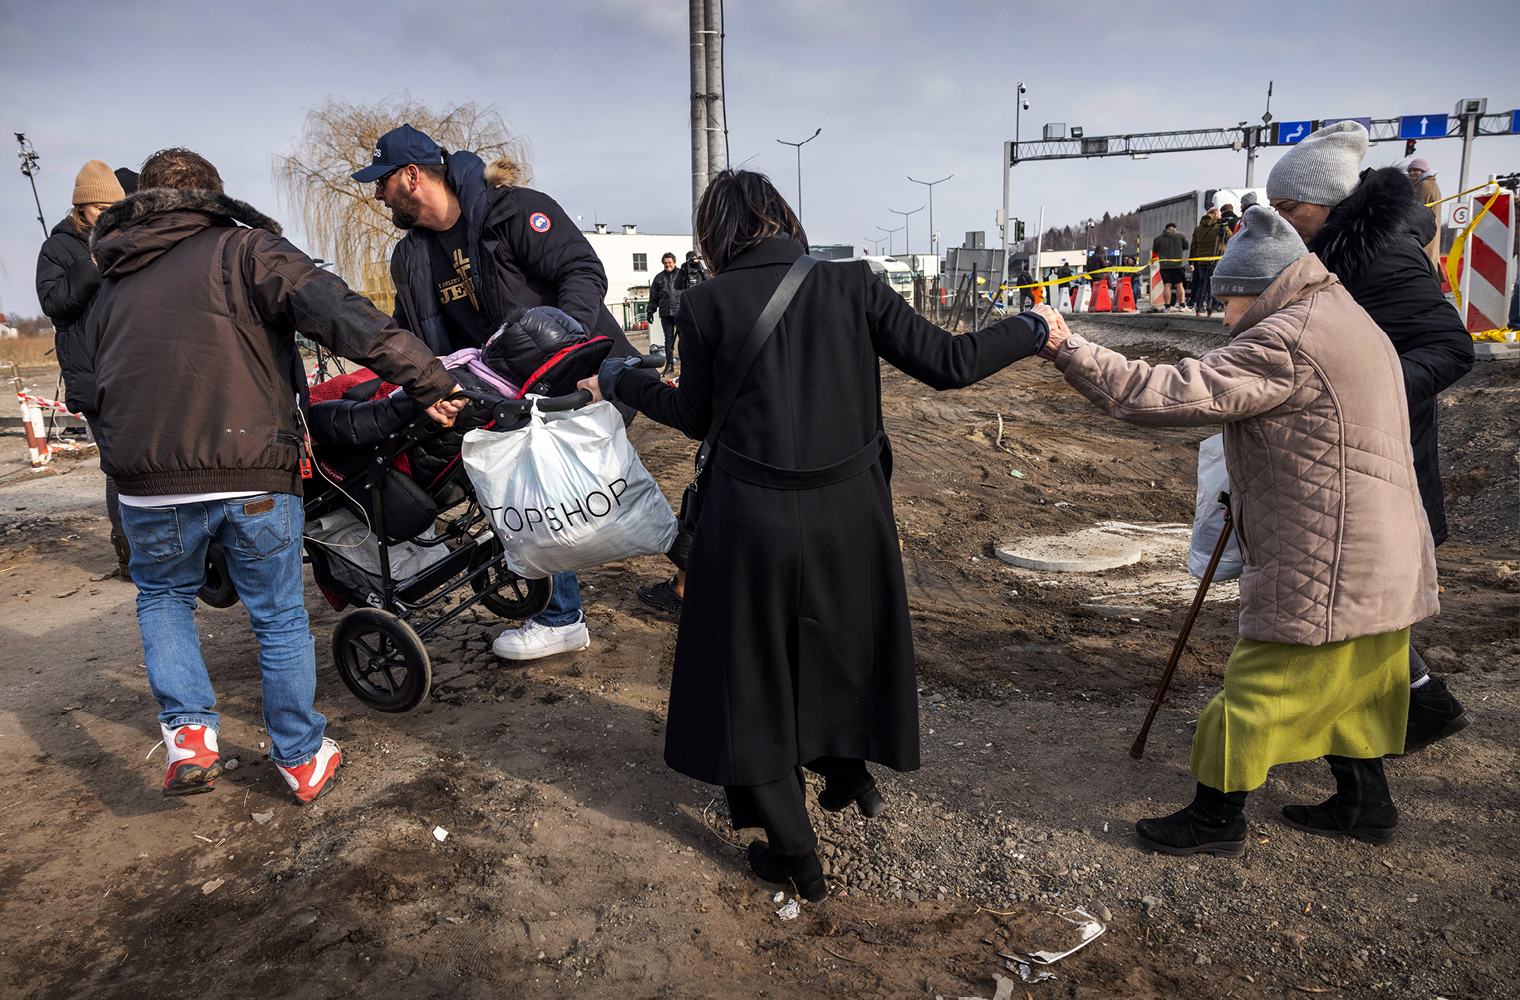 Das Bild zeigt zwei ältere Frauen, die über eine völlig vom Krieg zerstörte Straße gehen. Auch zwei Männer sind zu sehen, die einen Kinderwagen über das zerstörte Gelände hiefen. 